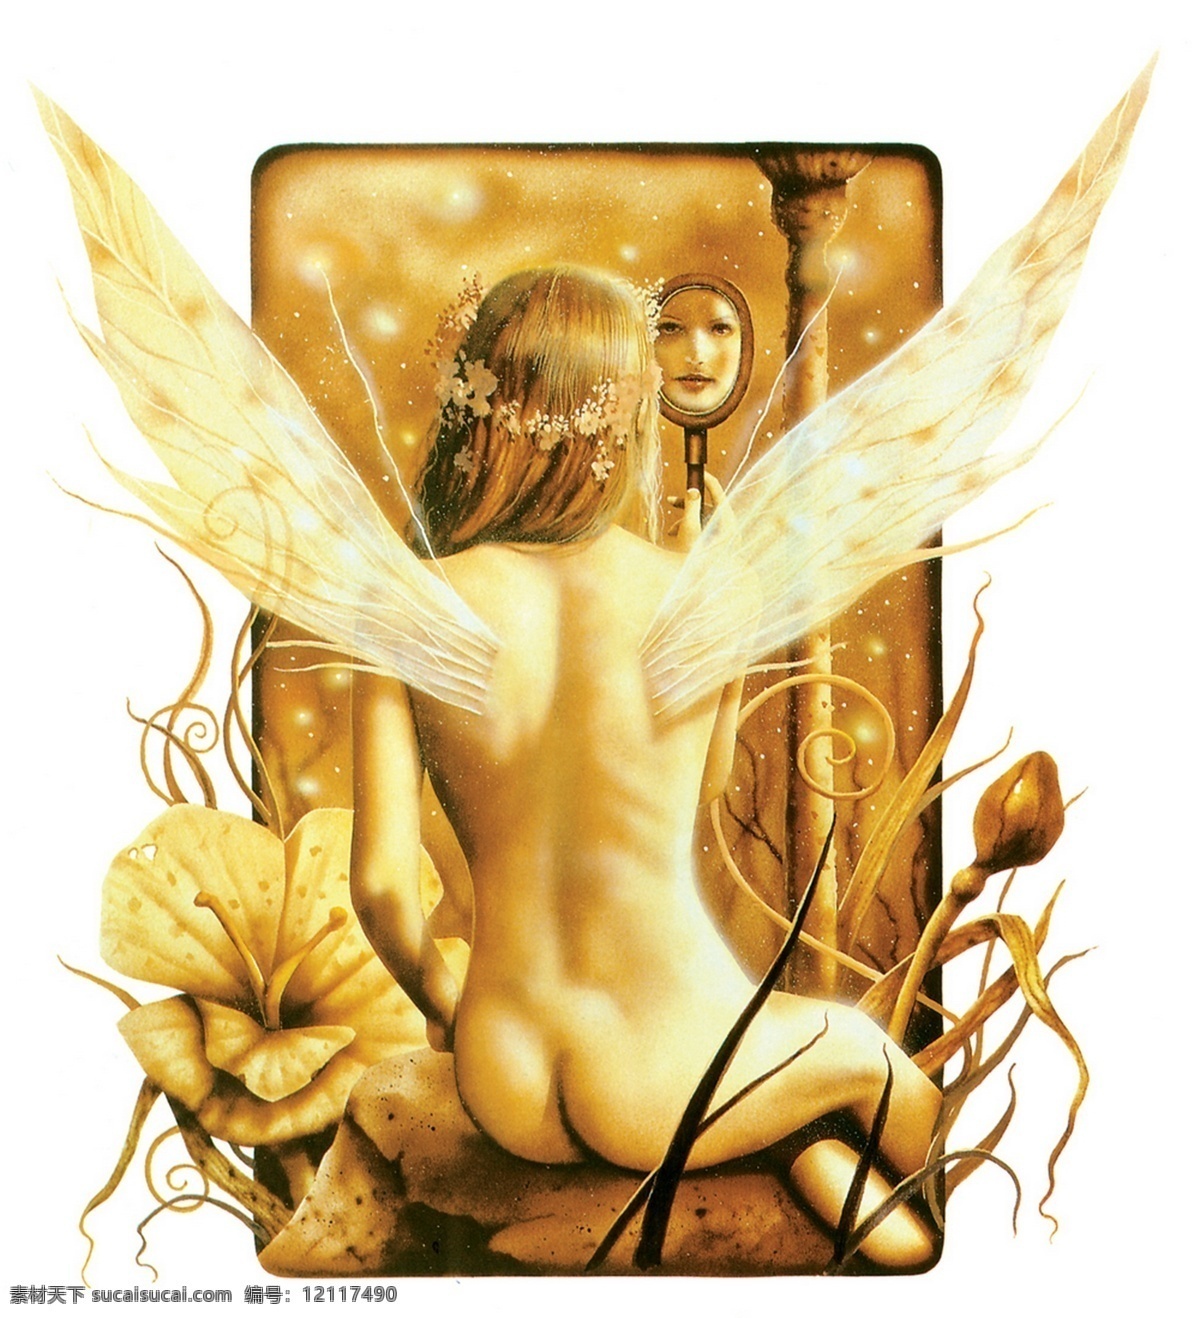 插画 插图 翅膀 动漫 绘画书法 精灵 镜子 美女 照镜子的仙女 背 仙女 欧洲 神话 童话 文化艺术 插画集